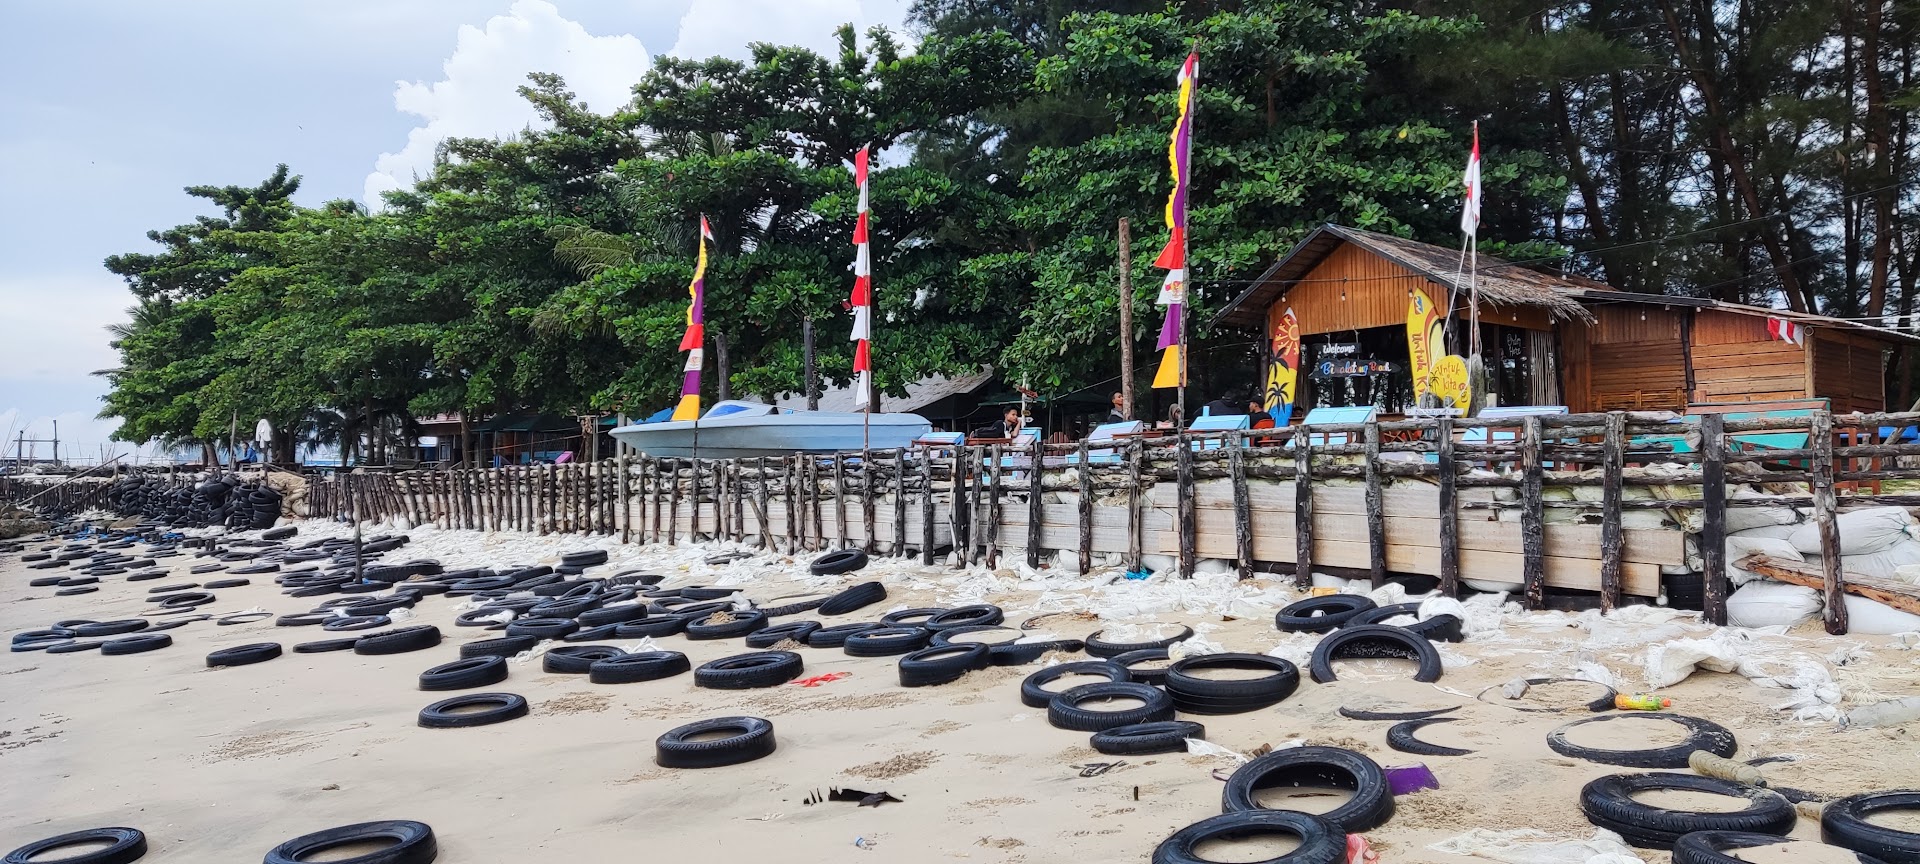 Pantai Binalatung: Harga Tiket, Foto, Lokasi, Fasilitas dan Spot